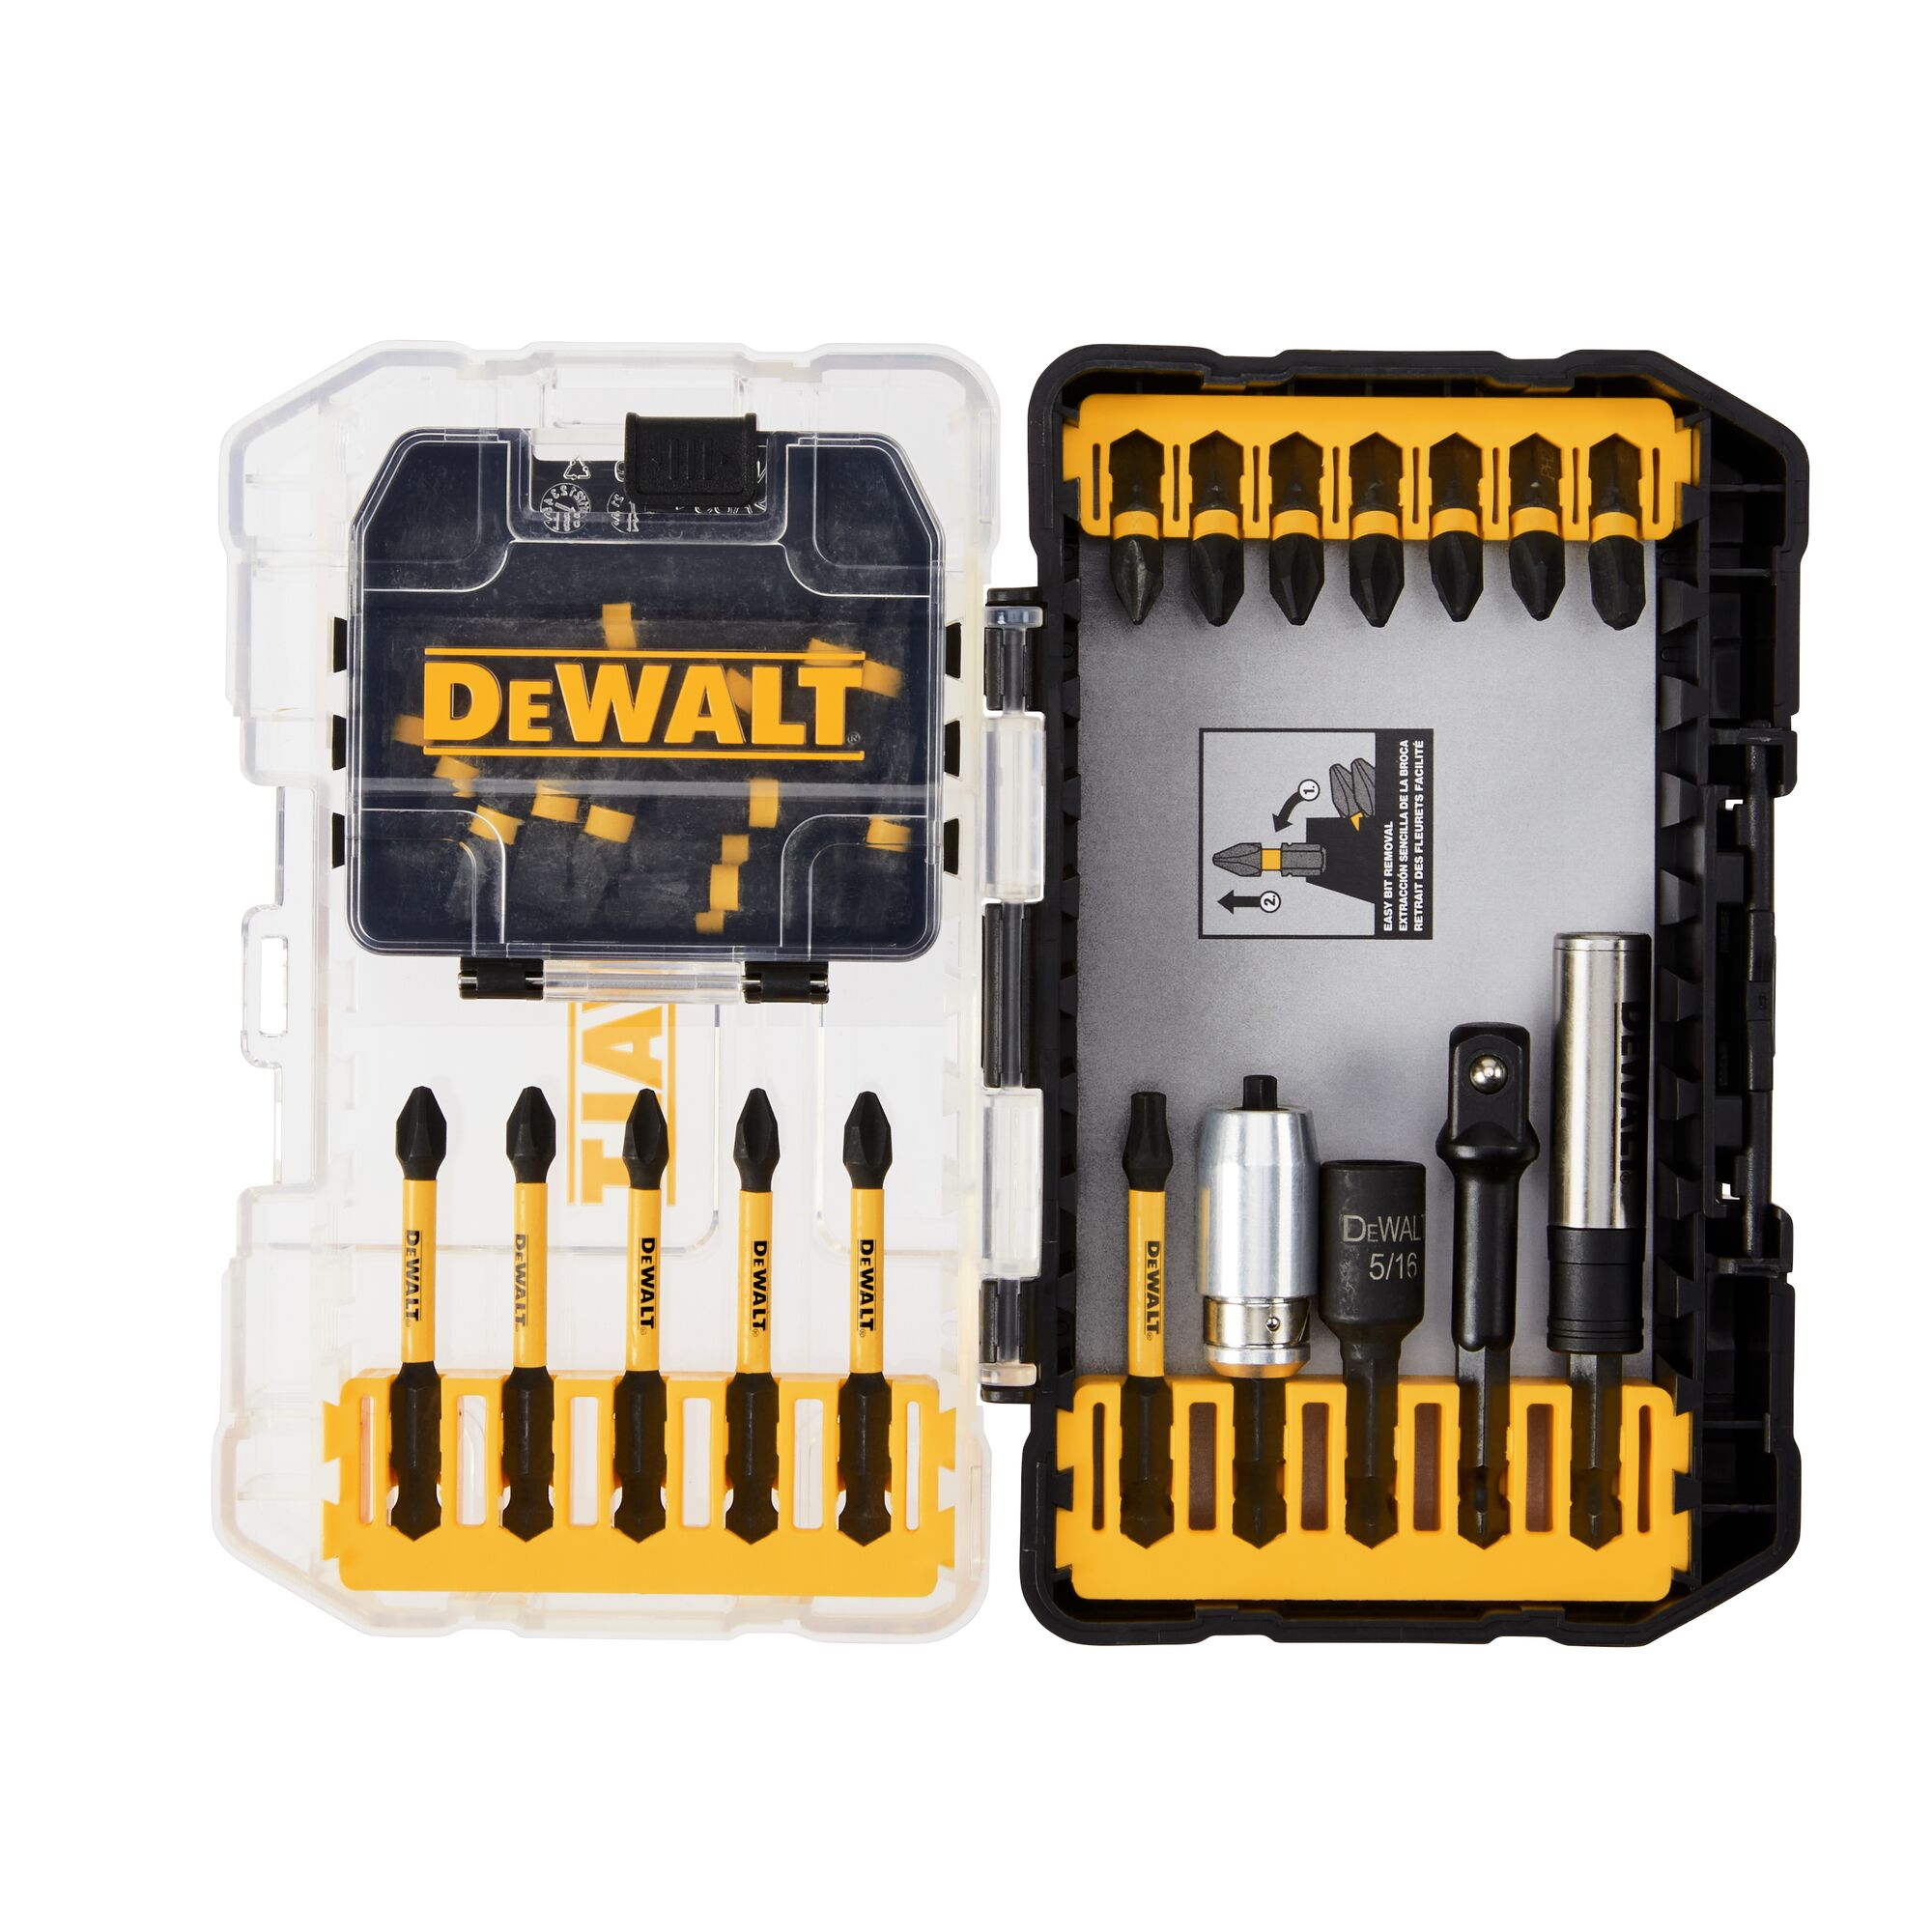 DEWALT Impact Screwdriver Bit Set - MAX IMPACT - 37 Piece DT70723